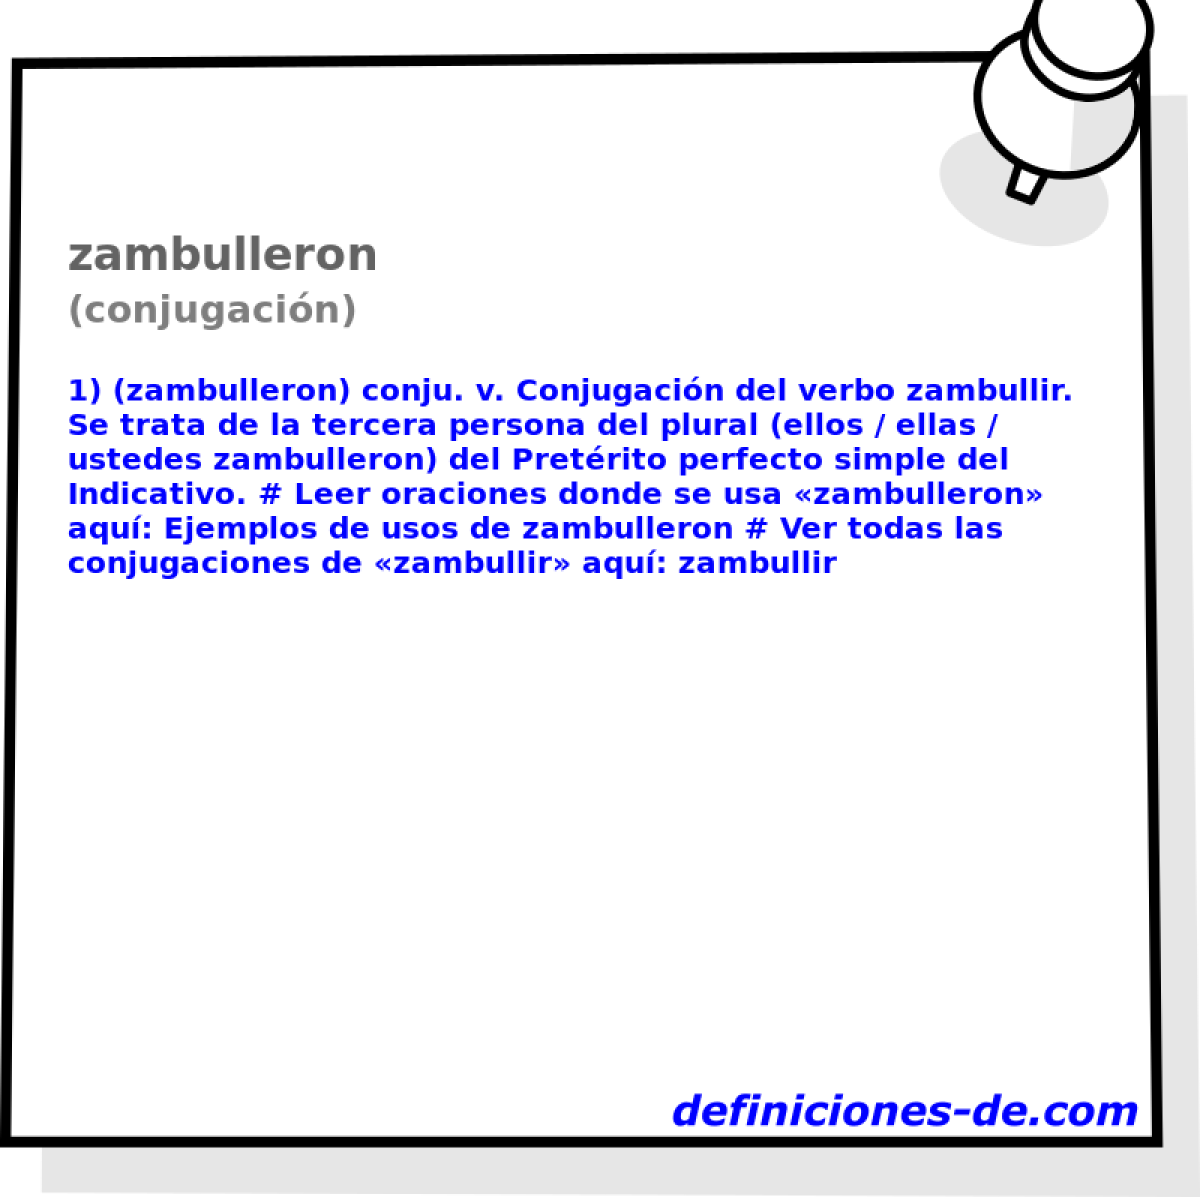 zambulleron (conjugacin)